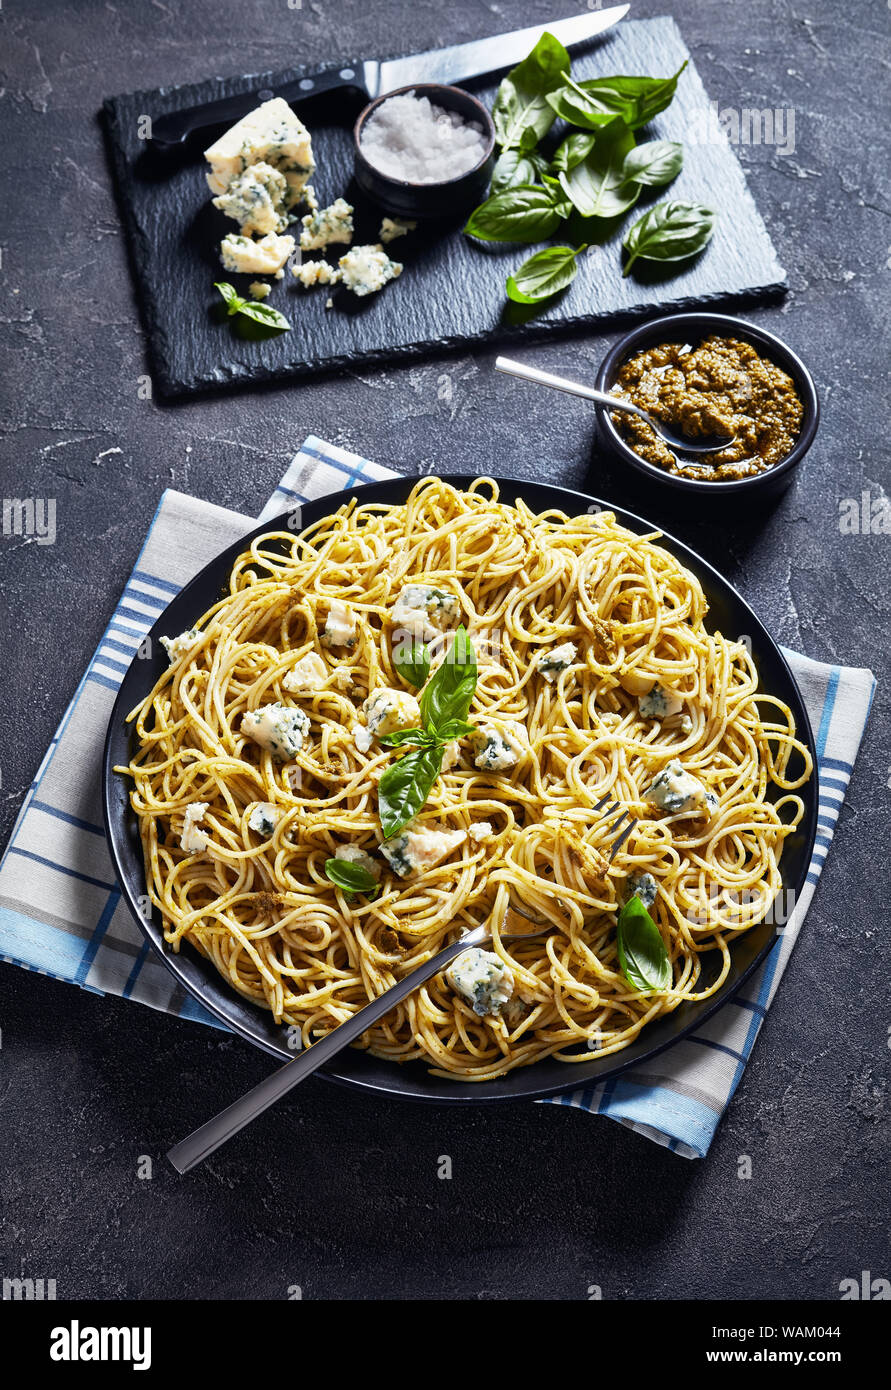 Délicieux spaghetti au pesto de basilic et de fromage bleu sur une plaque noire sur une table avec le pesto dans un bol noir, la cuisine italienne, vue verticale f Banque D'Images